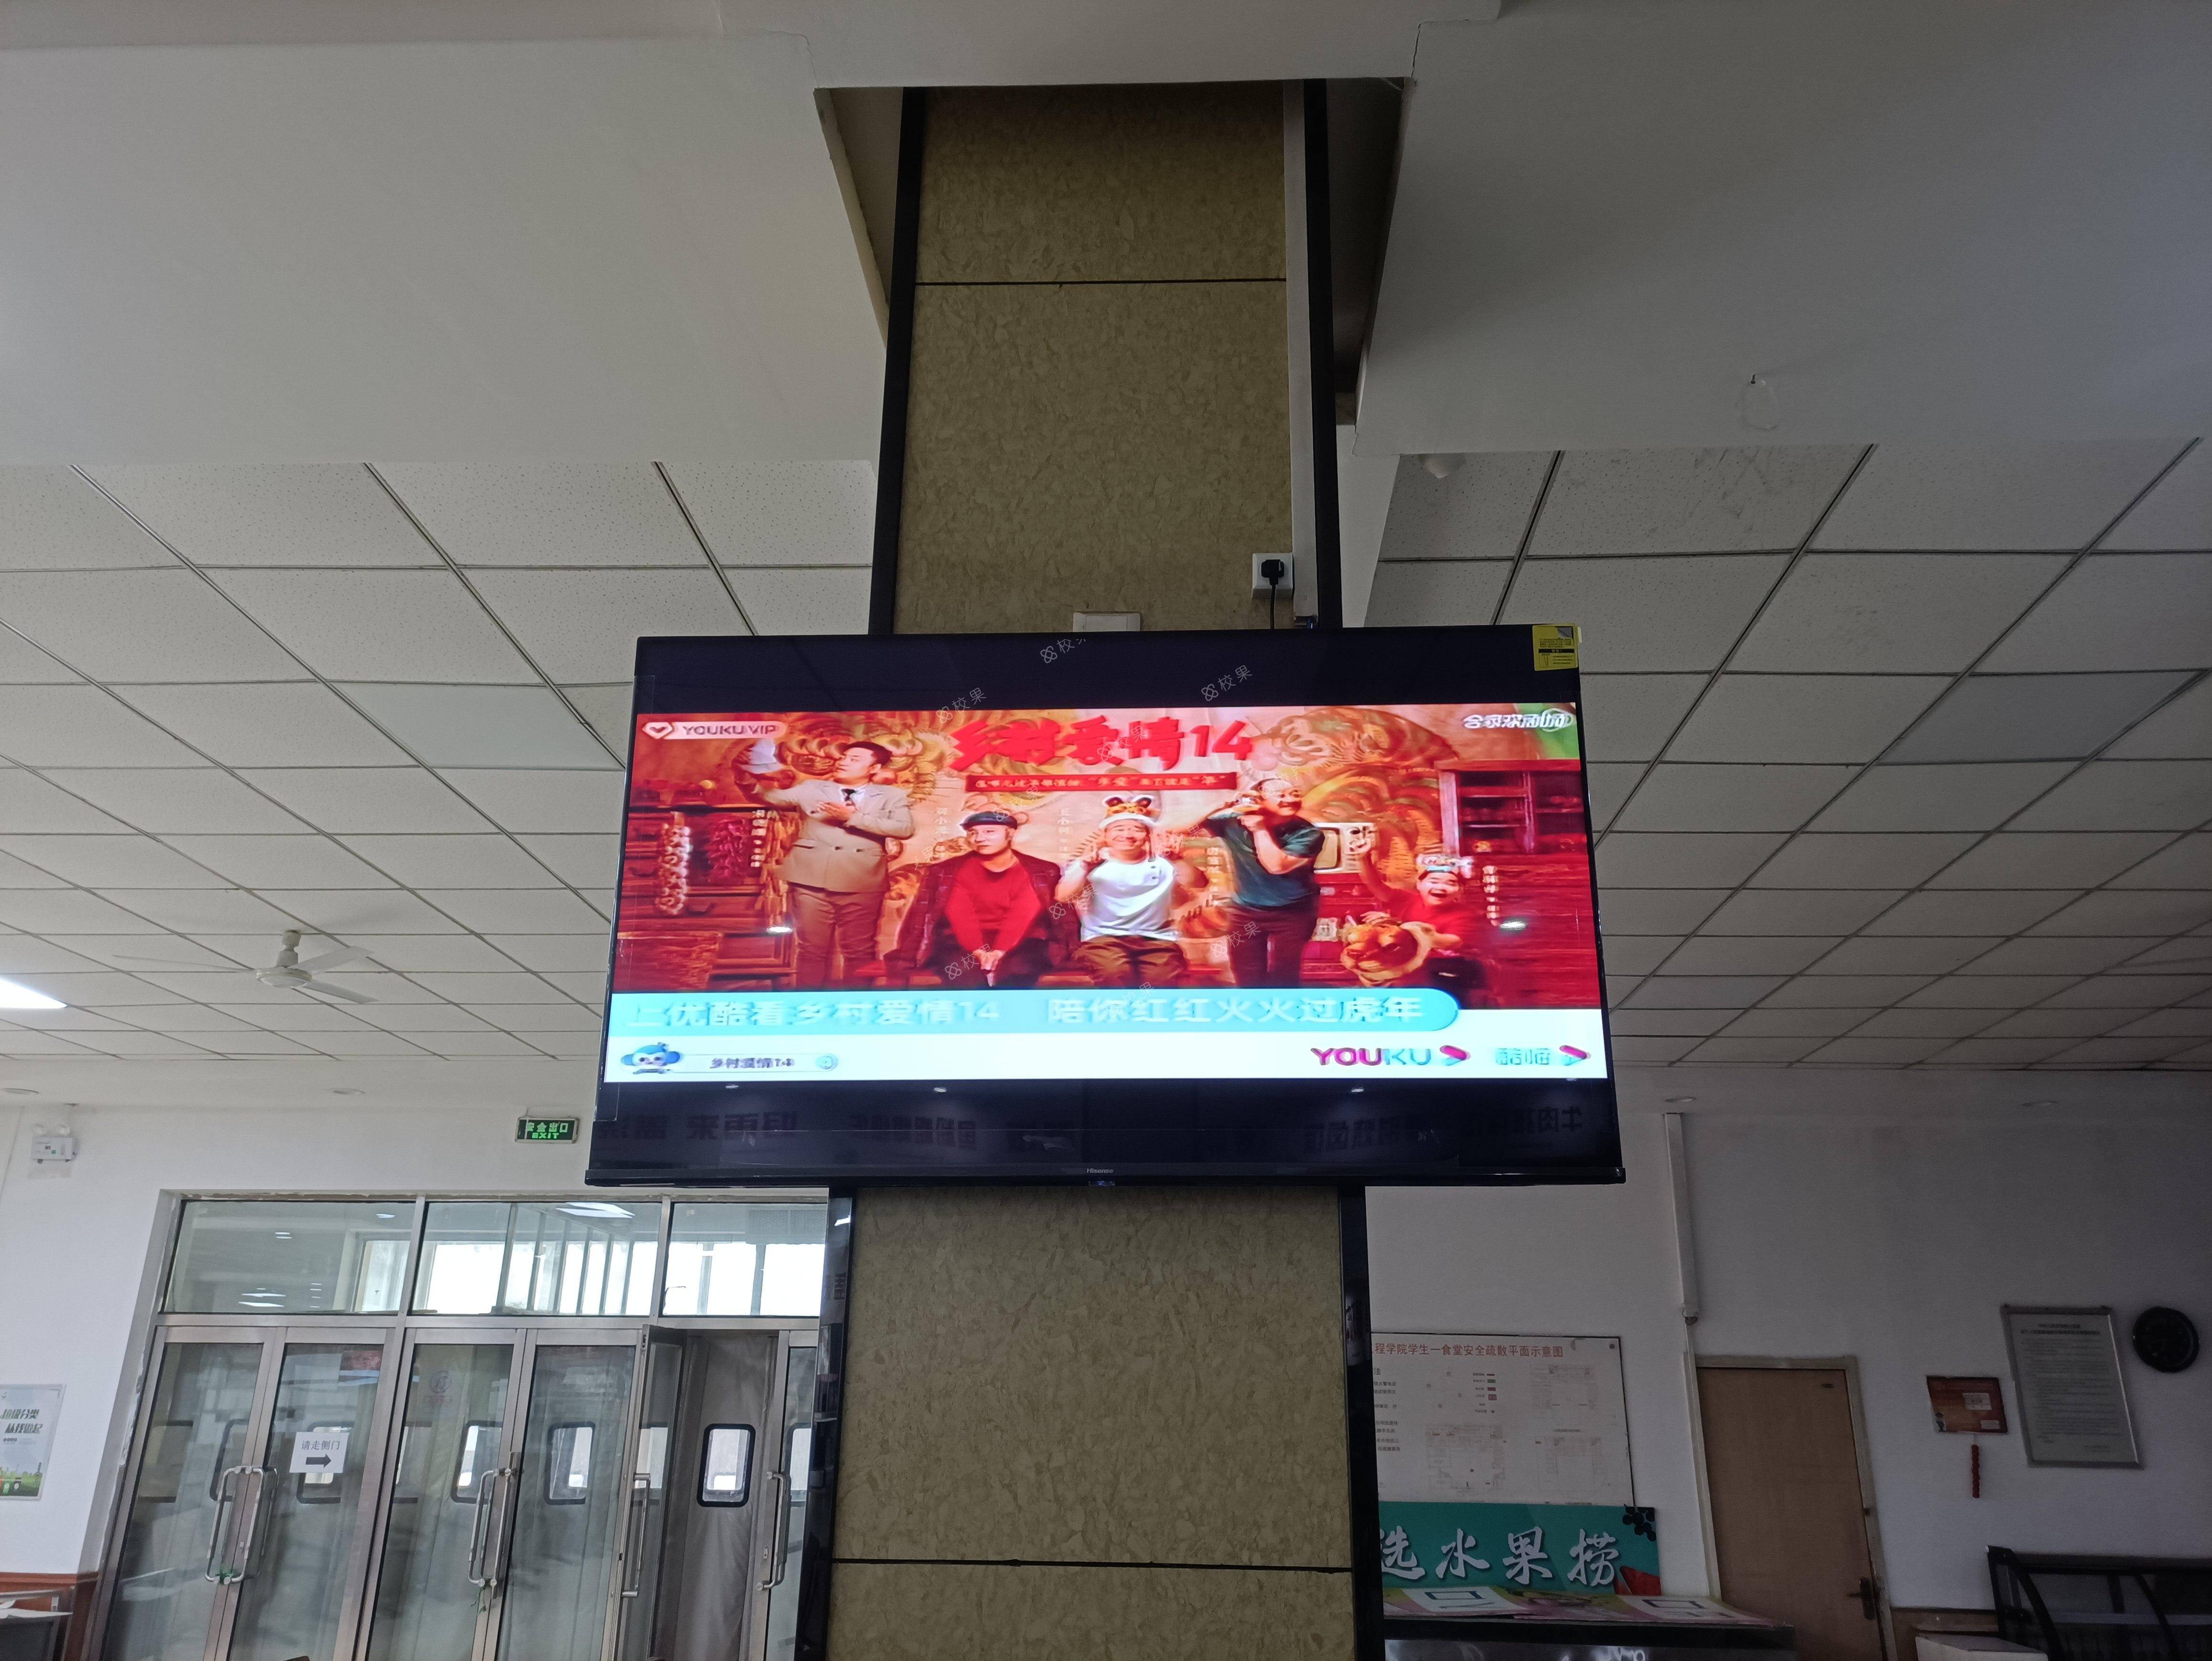 液晶屏广告 南京信息职业技术学院